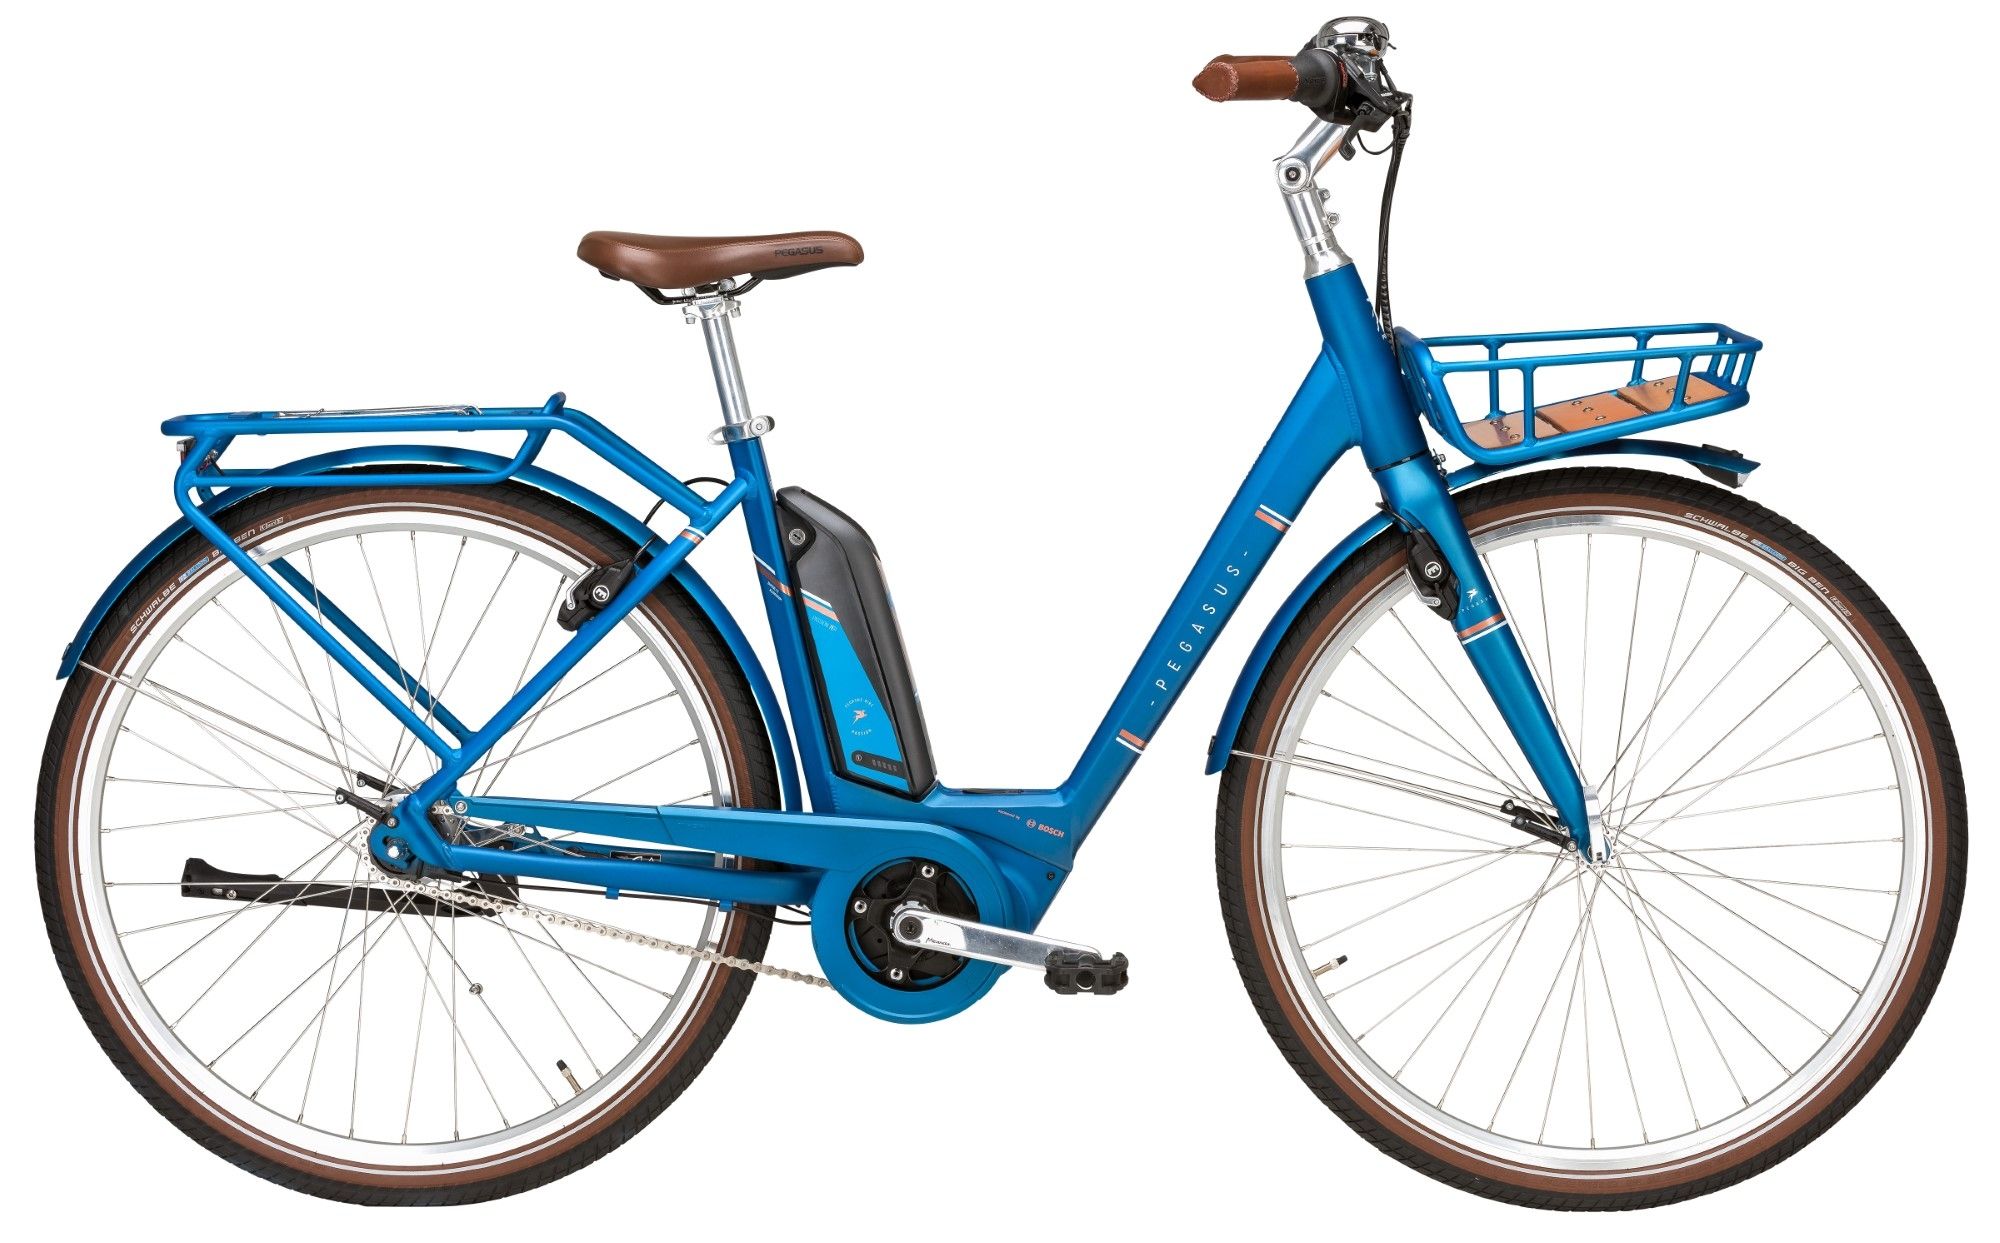 Pegasus Passion E7F Damen 500Wh blau (2019) - Fahrrad Online Shop